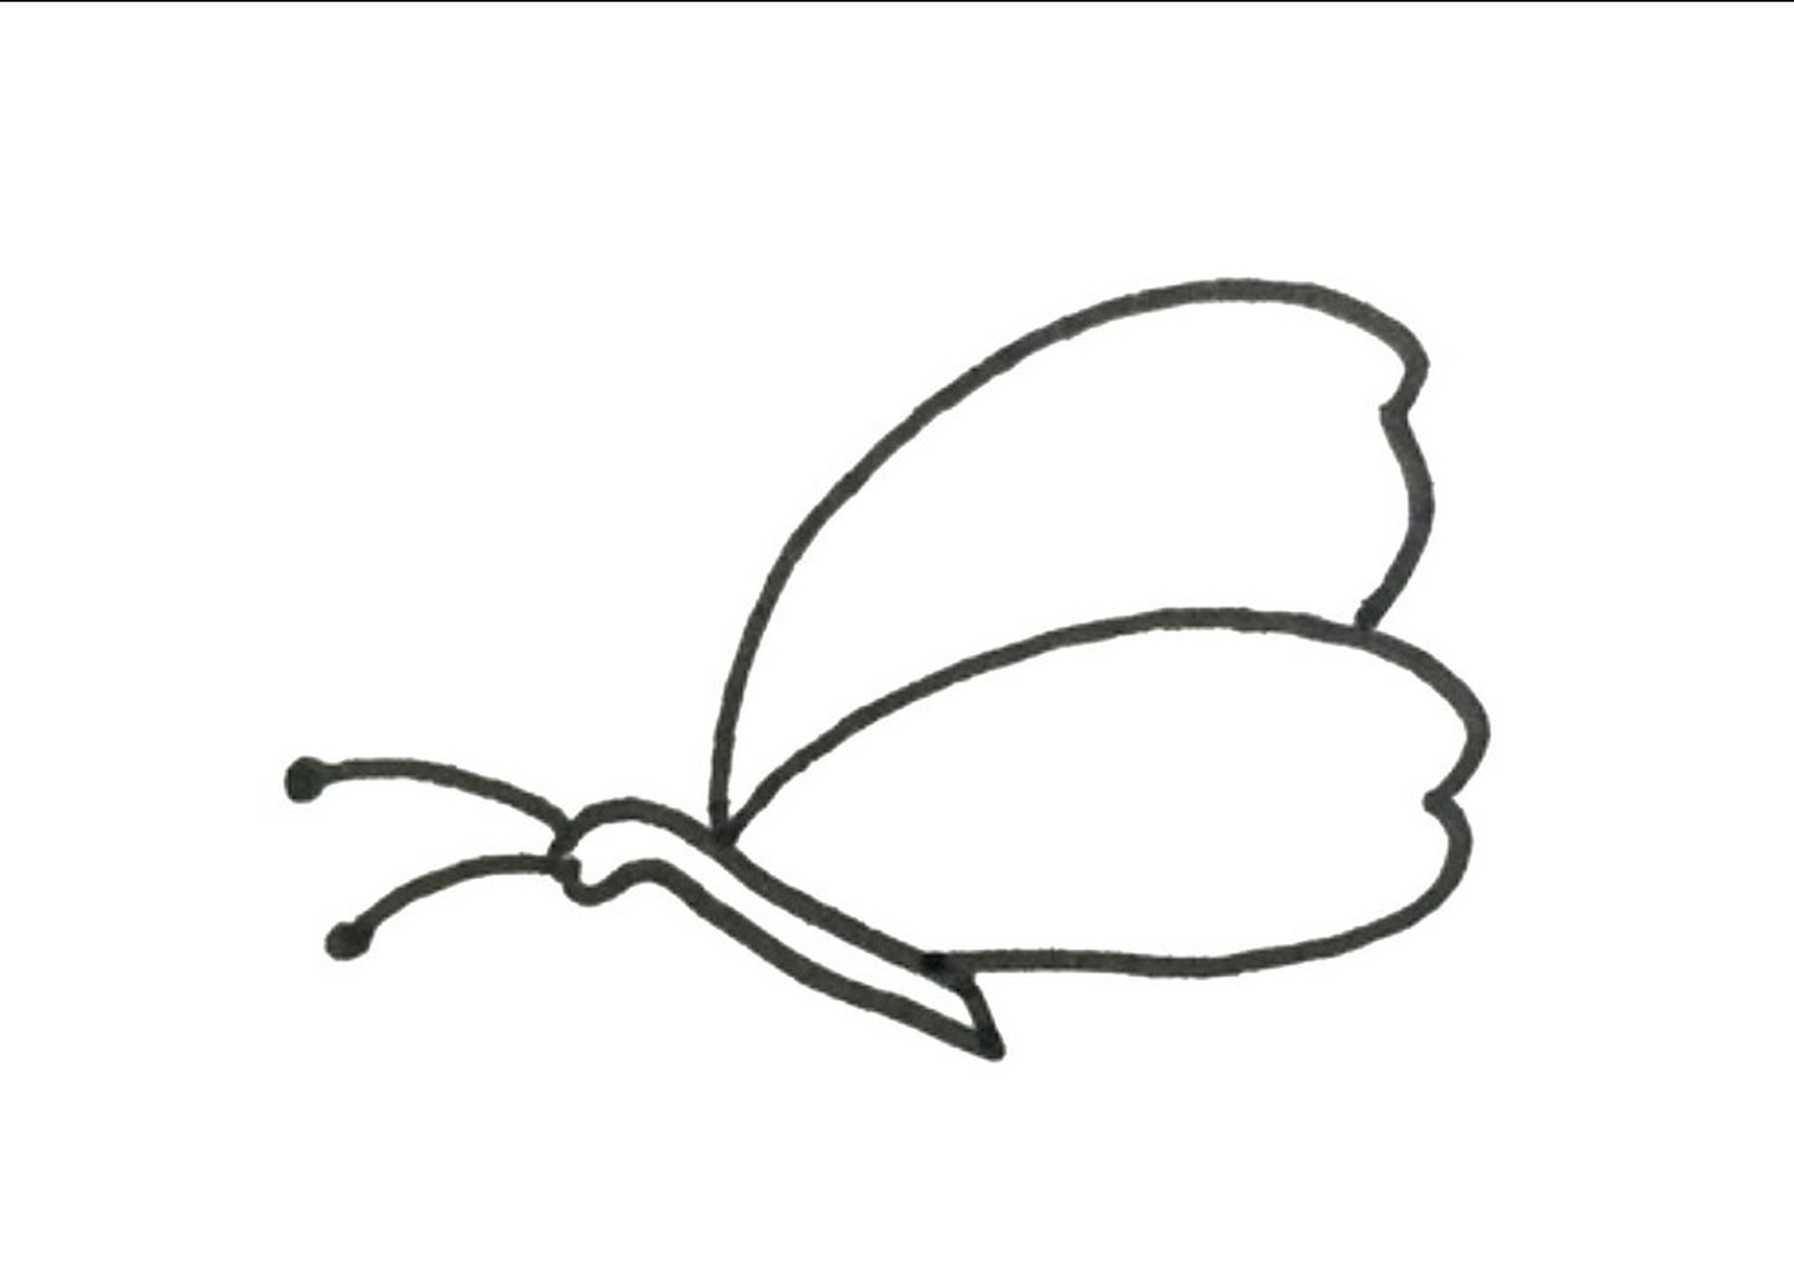 会飞的蝴蝶简笔画图片